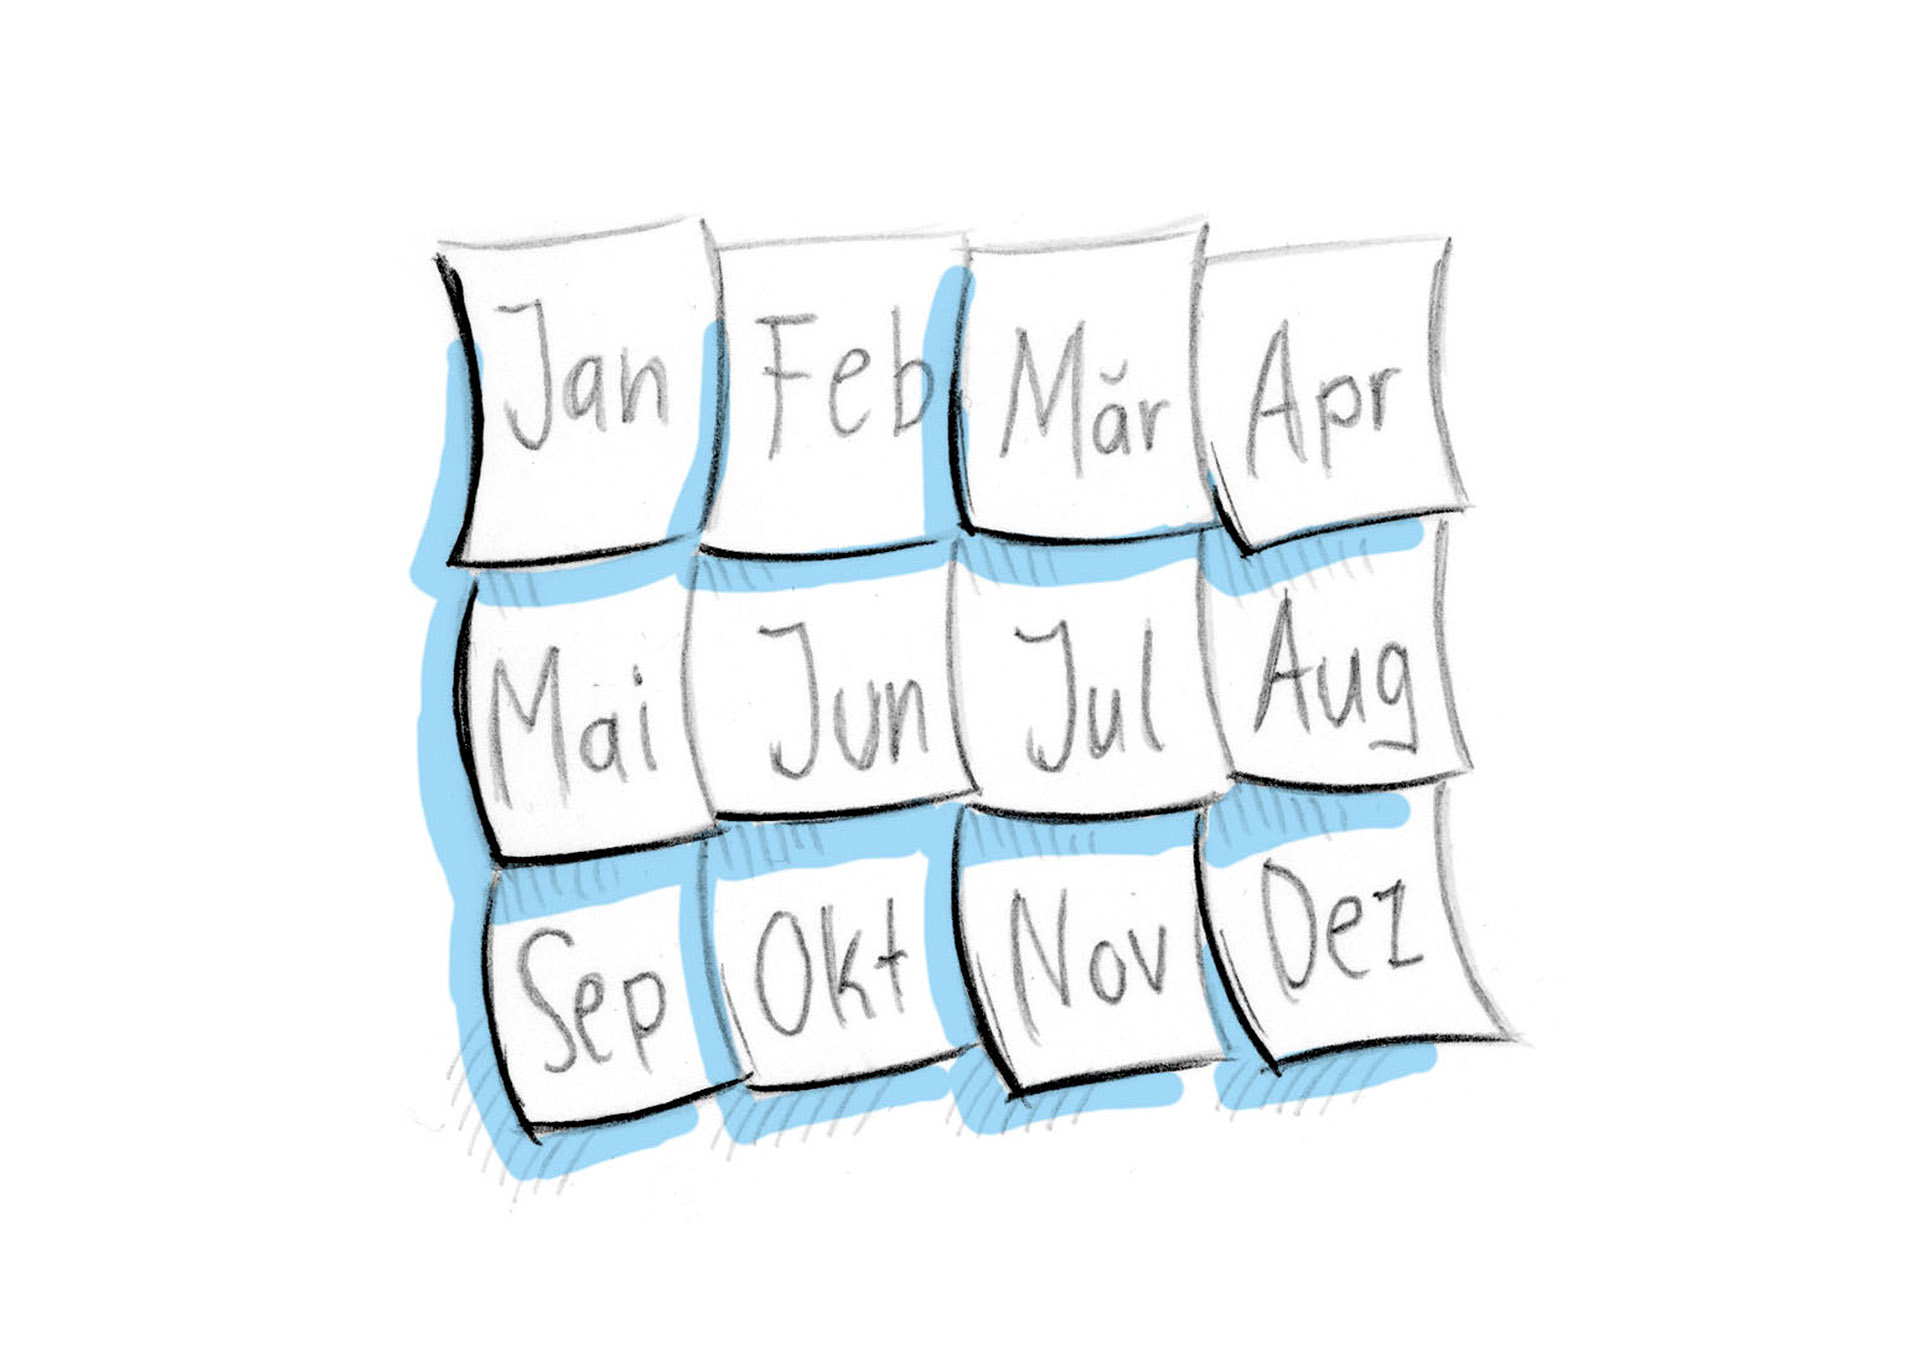 Bild: Kalender mit allen Monaten eines Jahres